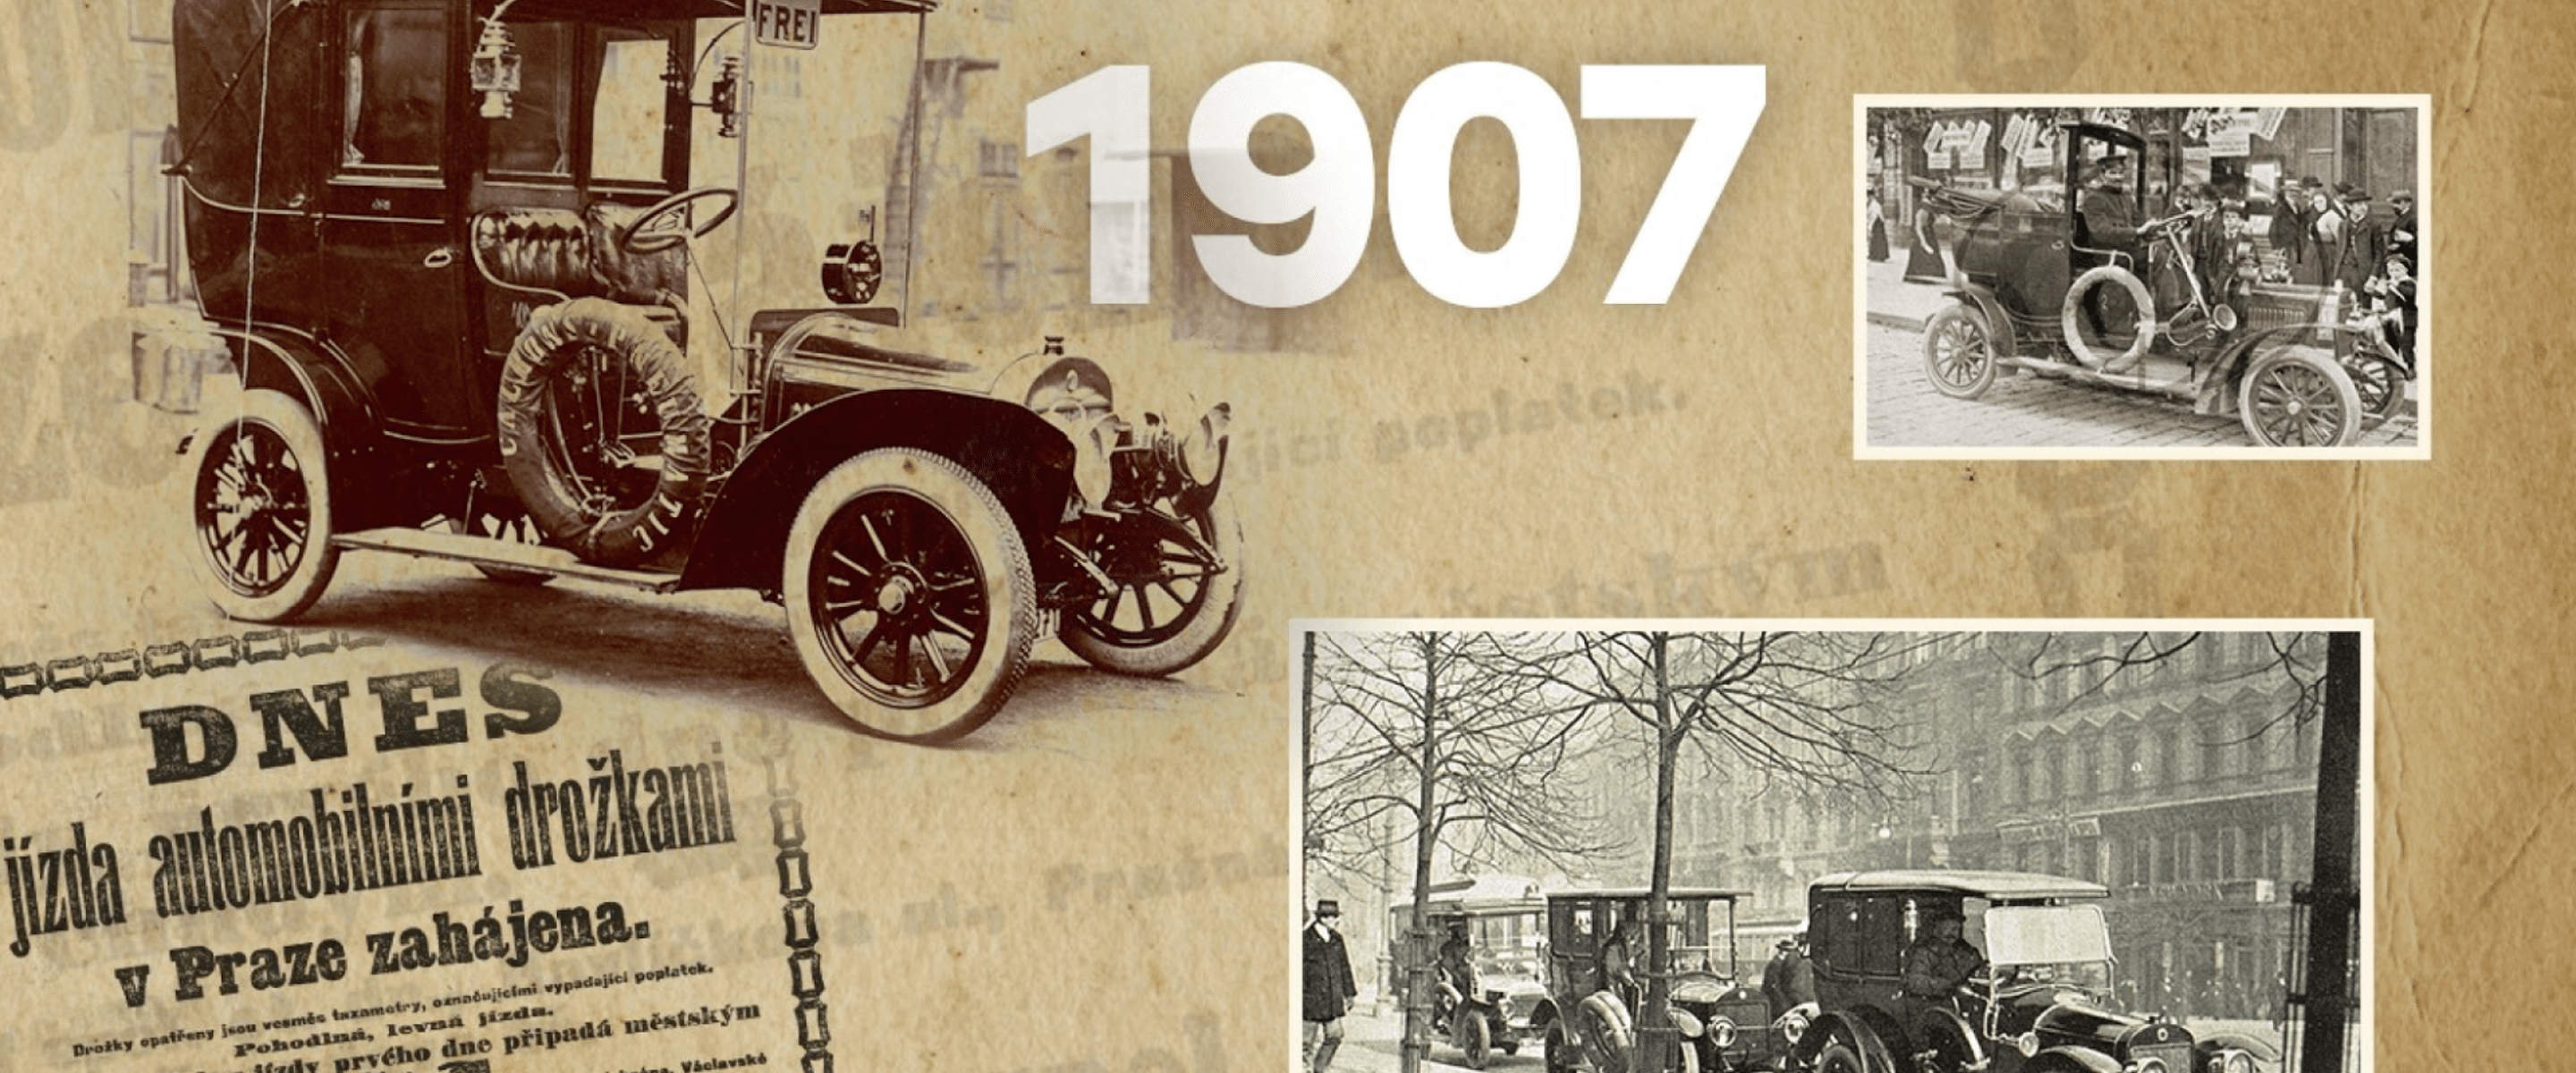 Het begin van de autotaxi in 1907: Škoda lanceerde hem